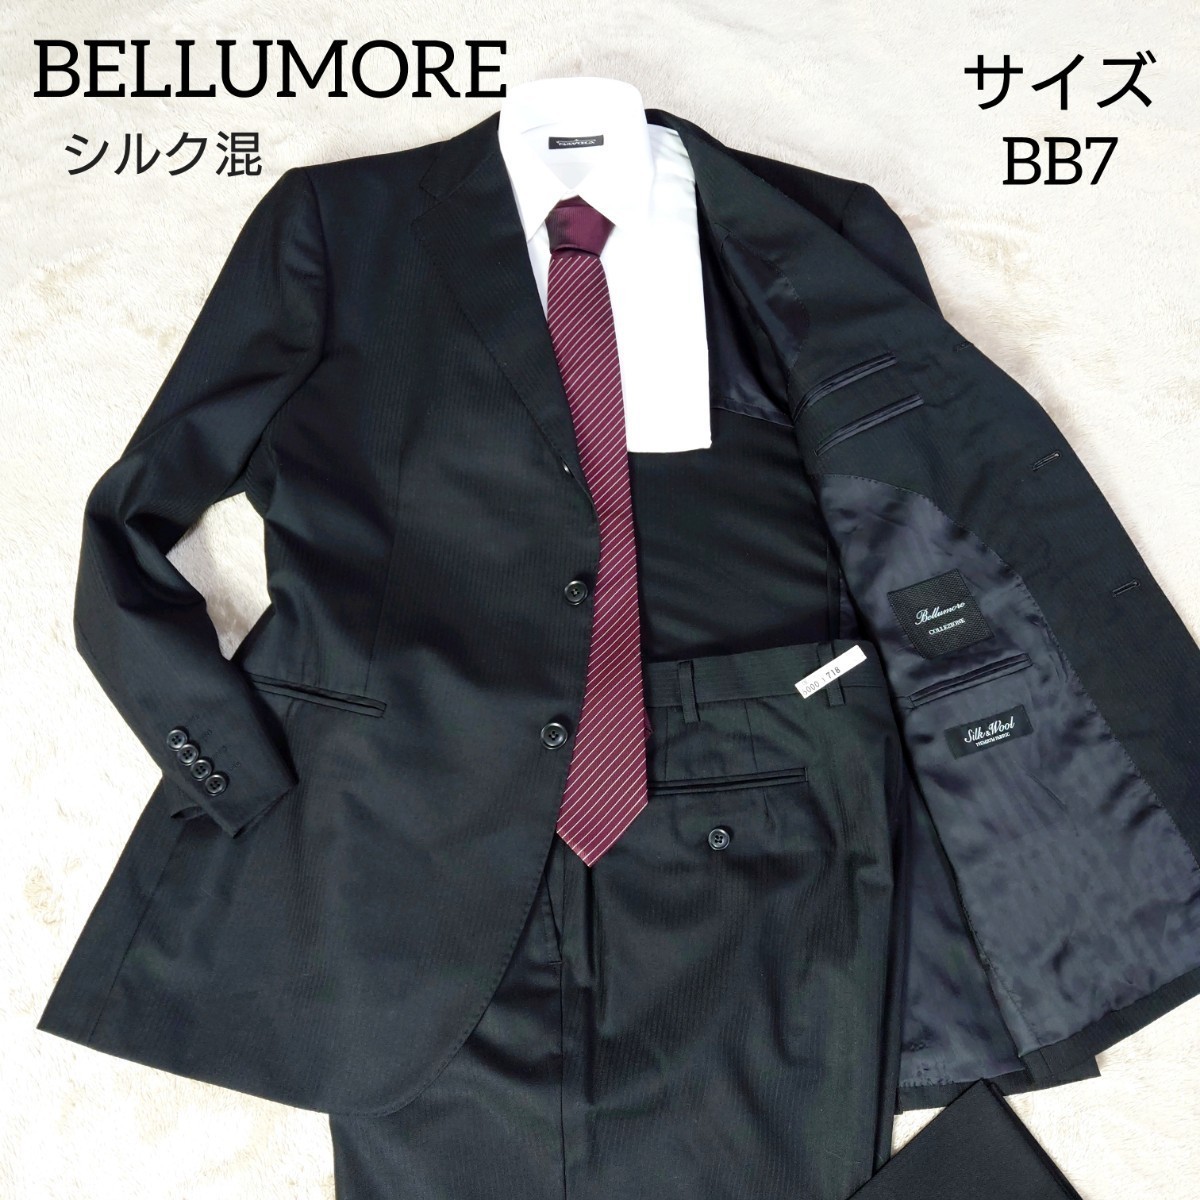 BELLUMORE　ベルモーレ　セットアップ　スーツ　ブラック　黒　シャドーストライプ　シルク混　背抜き　BB7　XL相当　3B　段返り